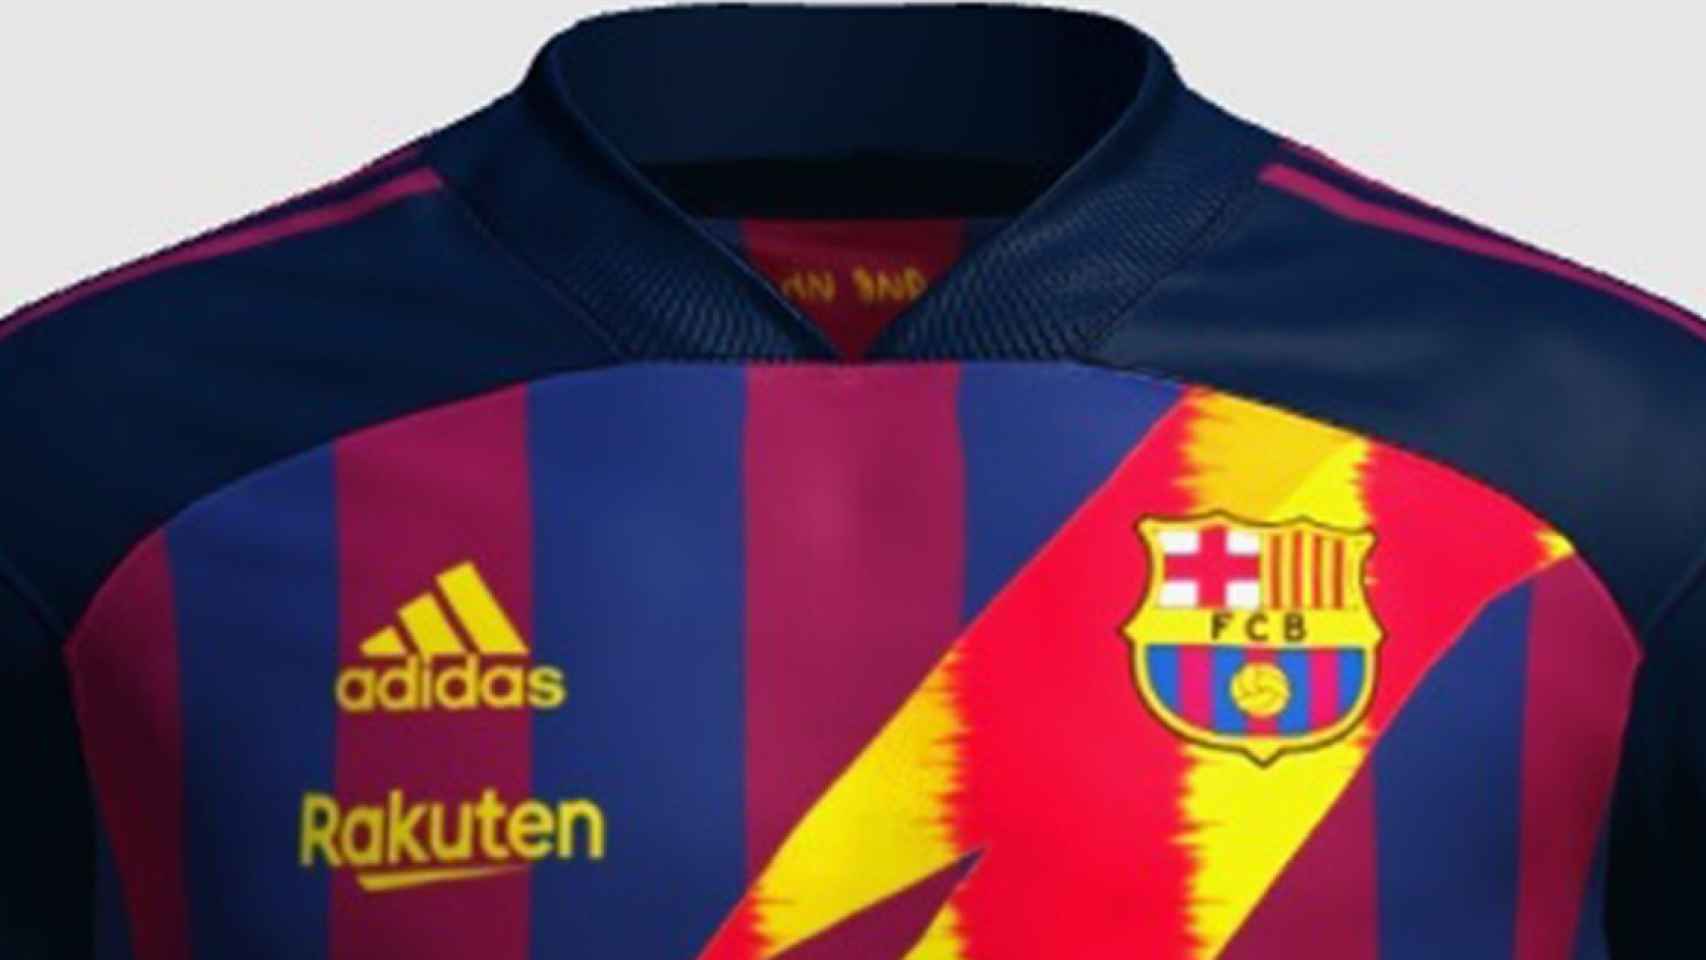 Depresión Perpetuo Formación La extravagante camiseta Adidas que ofrecen al Barça